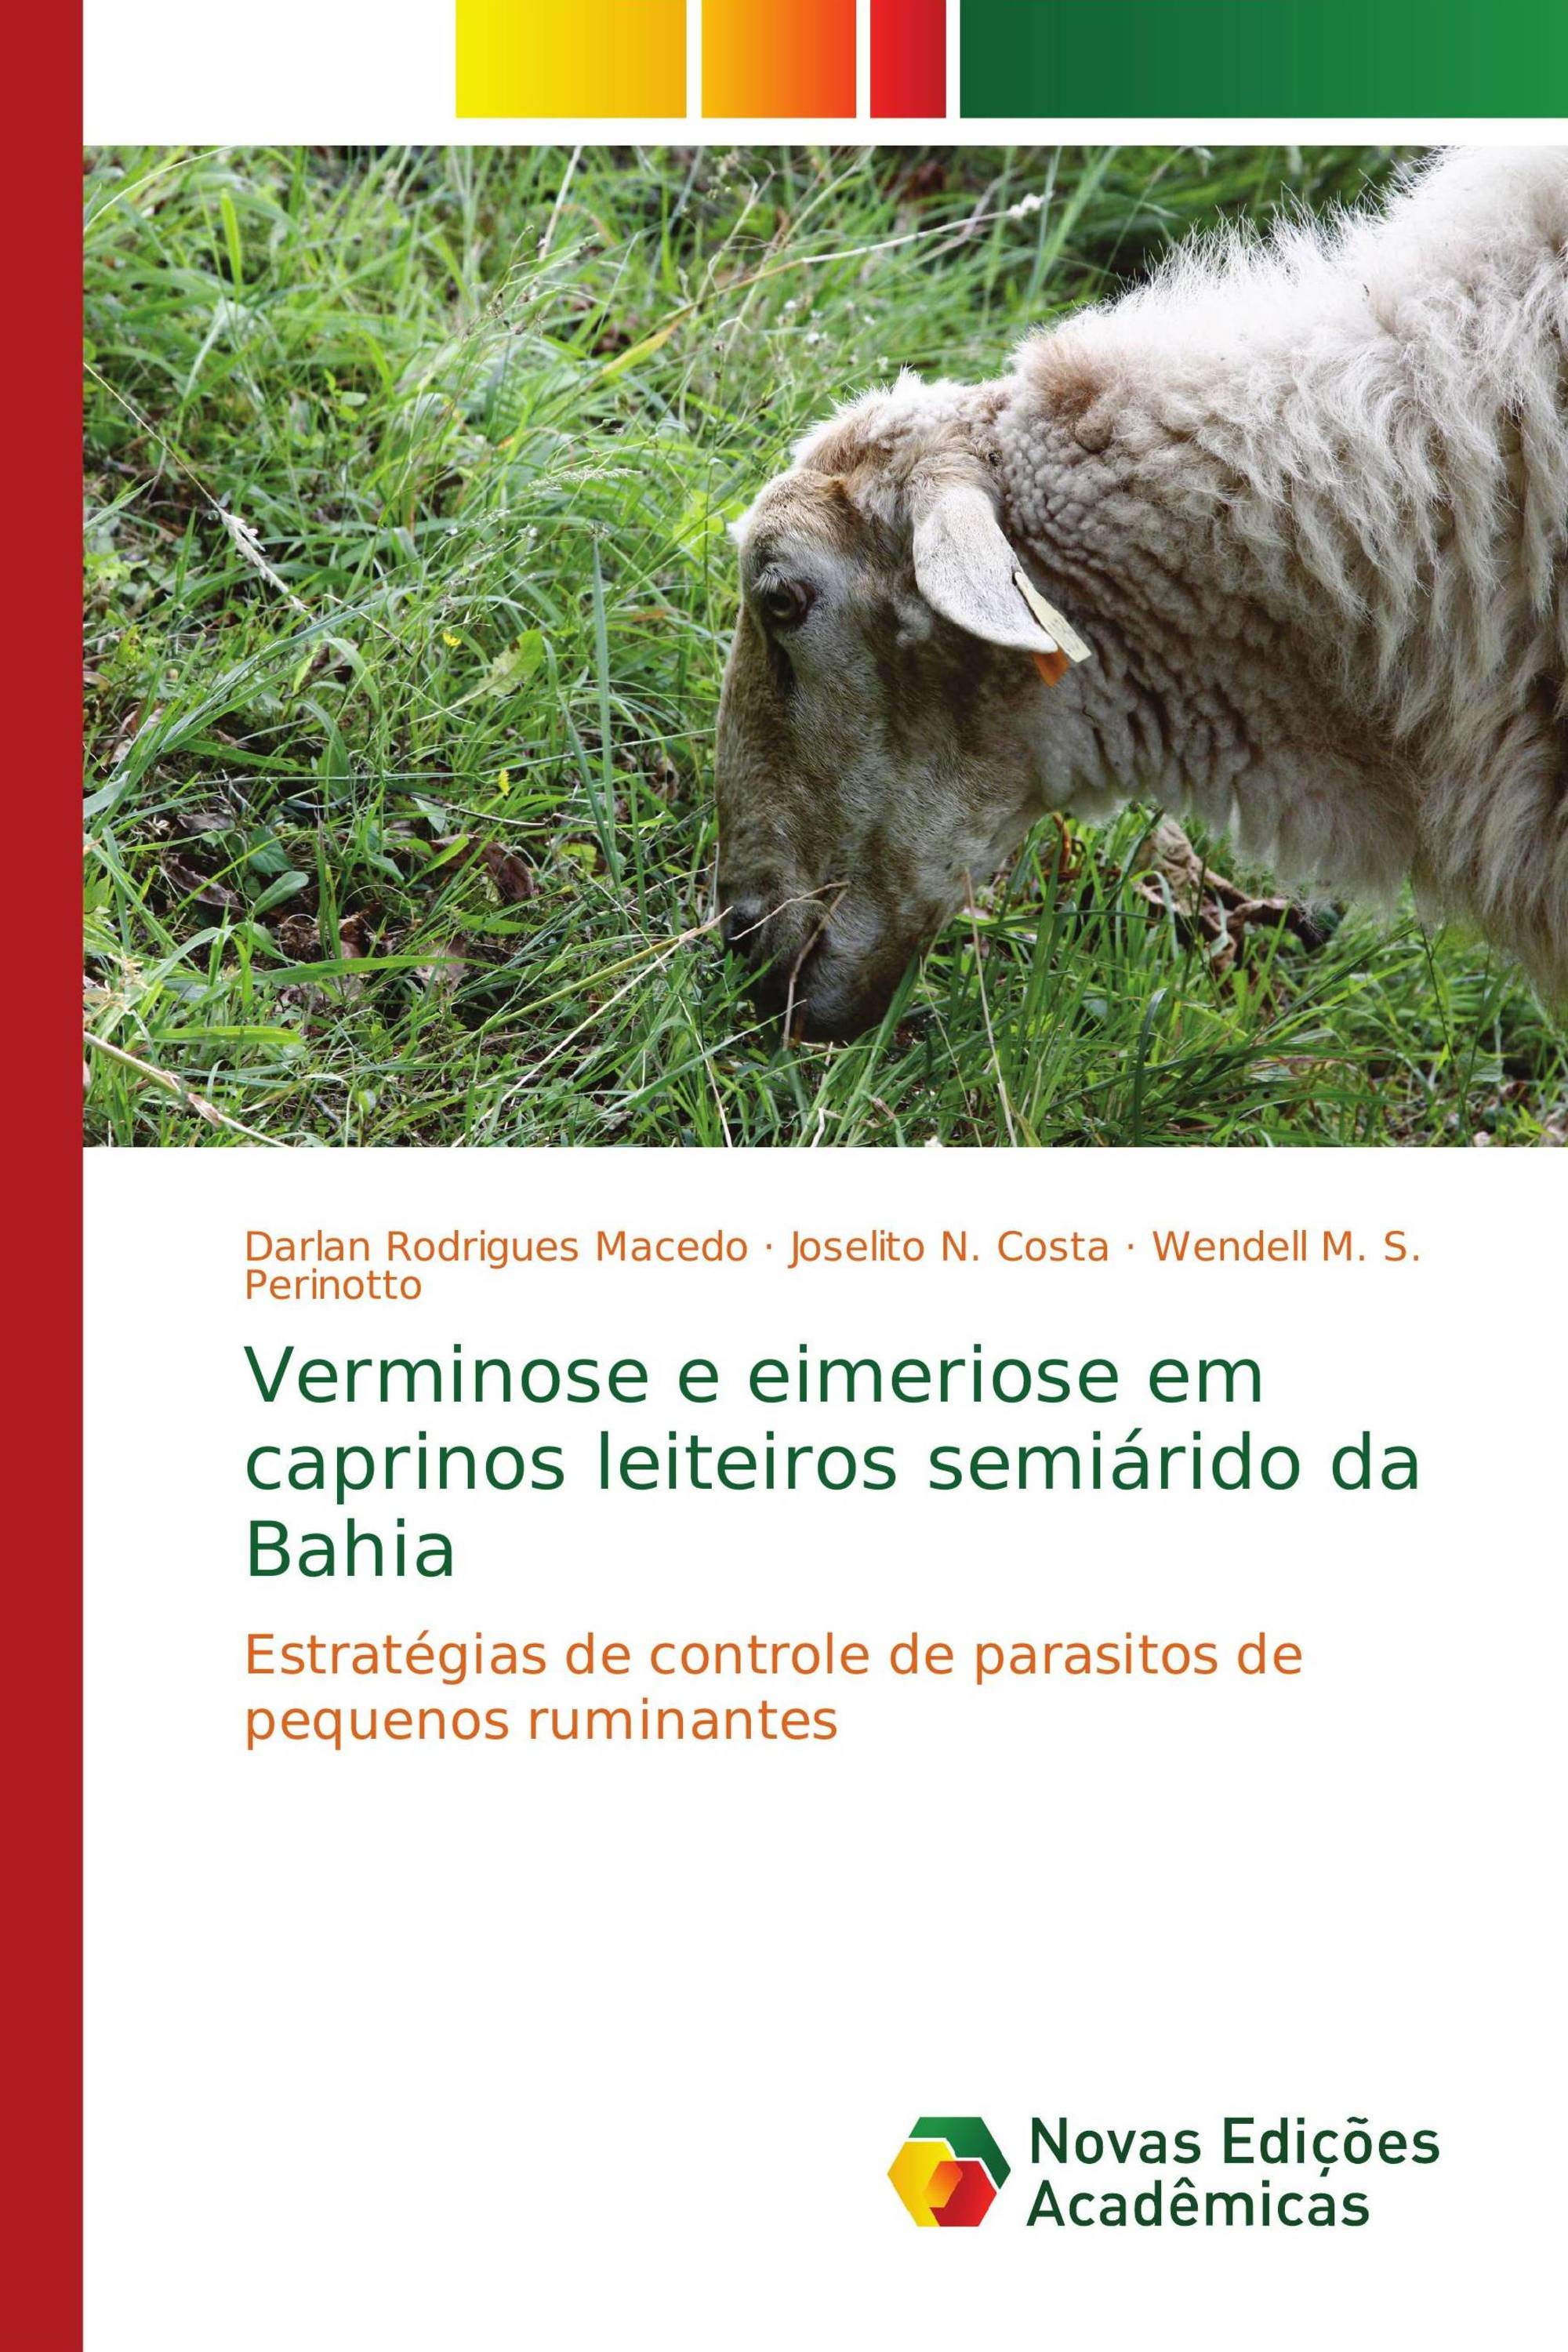 Verminose e eimeriose em caprinos leiteiros semiárido da Bahia